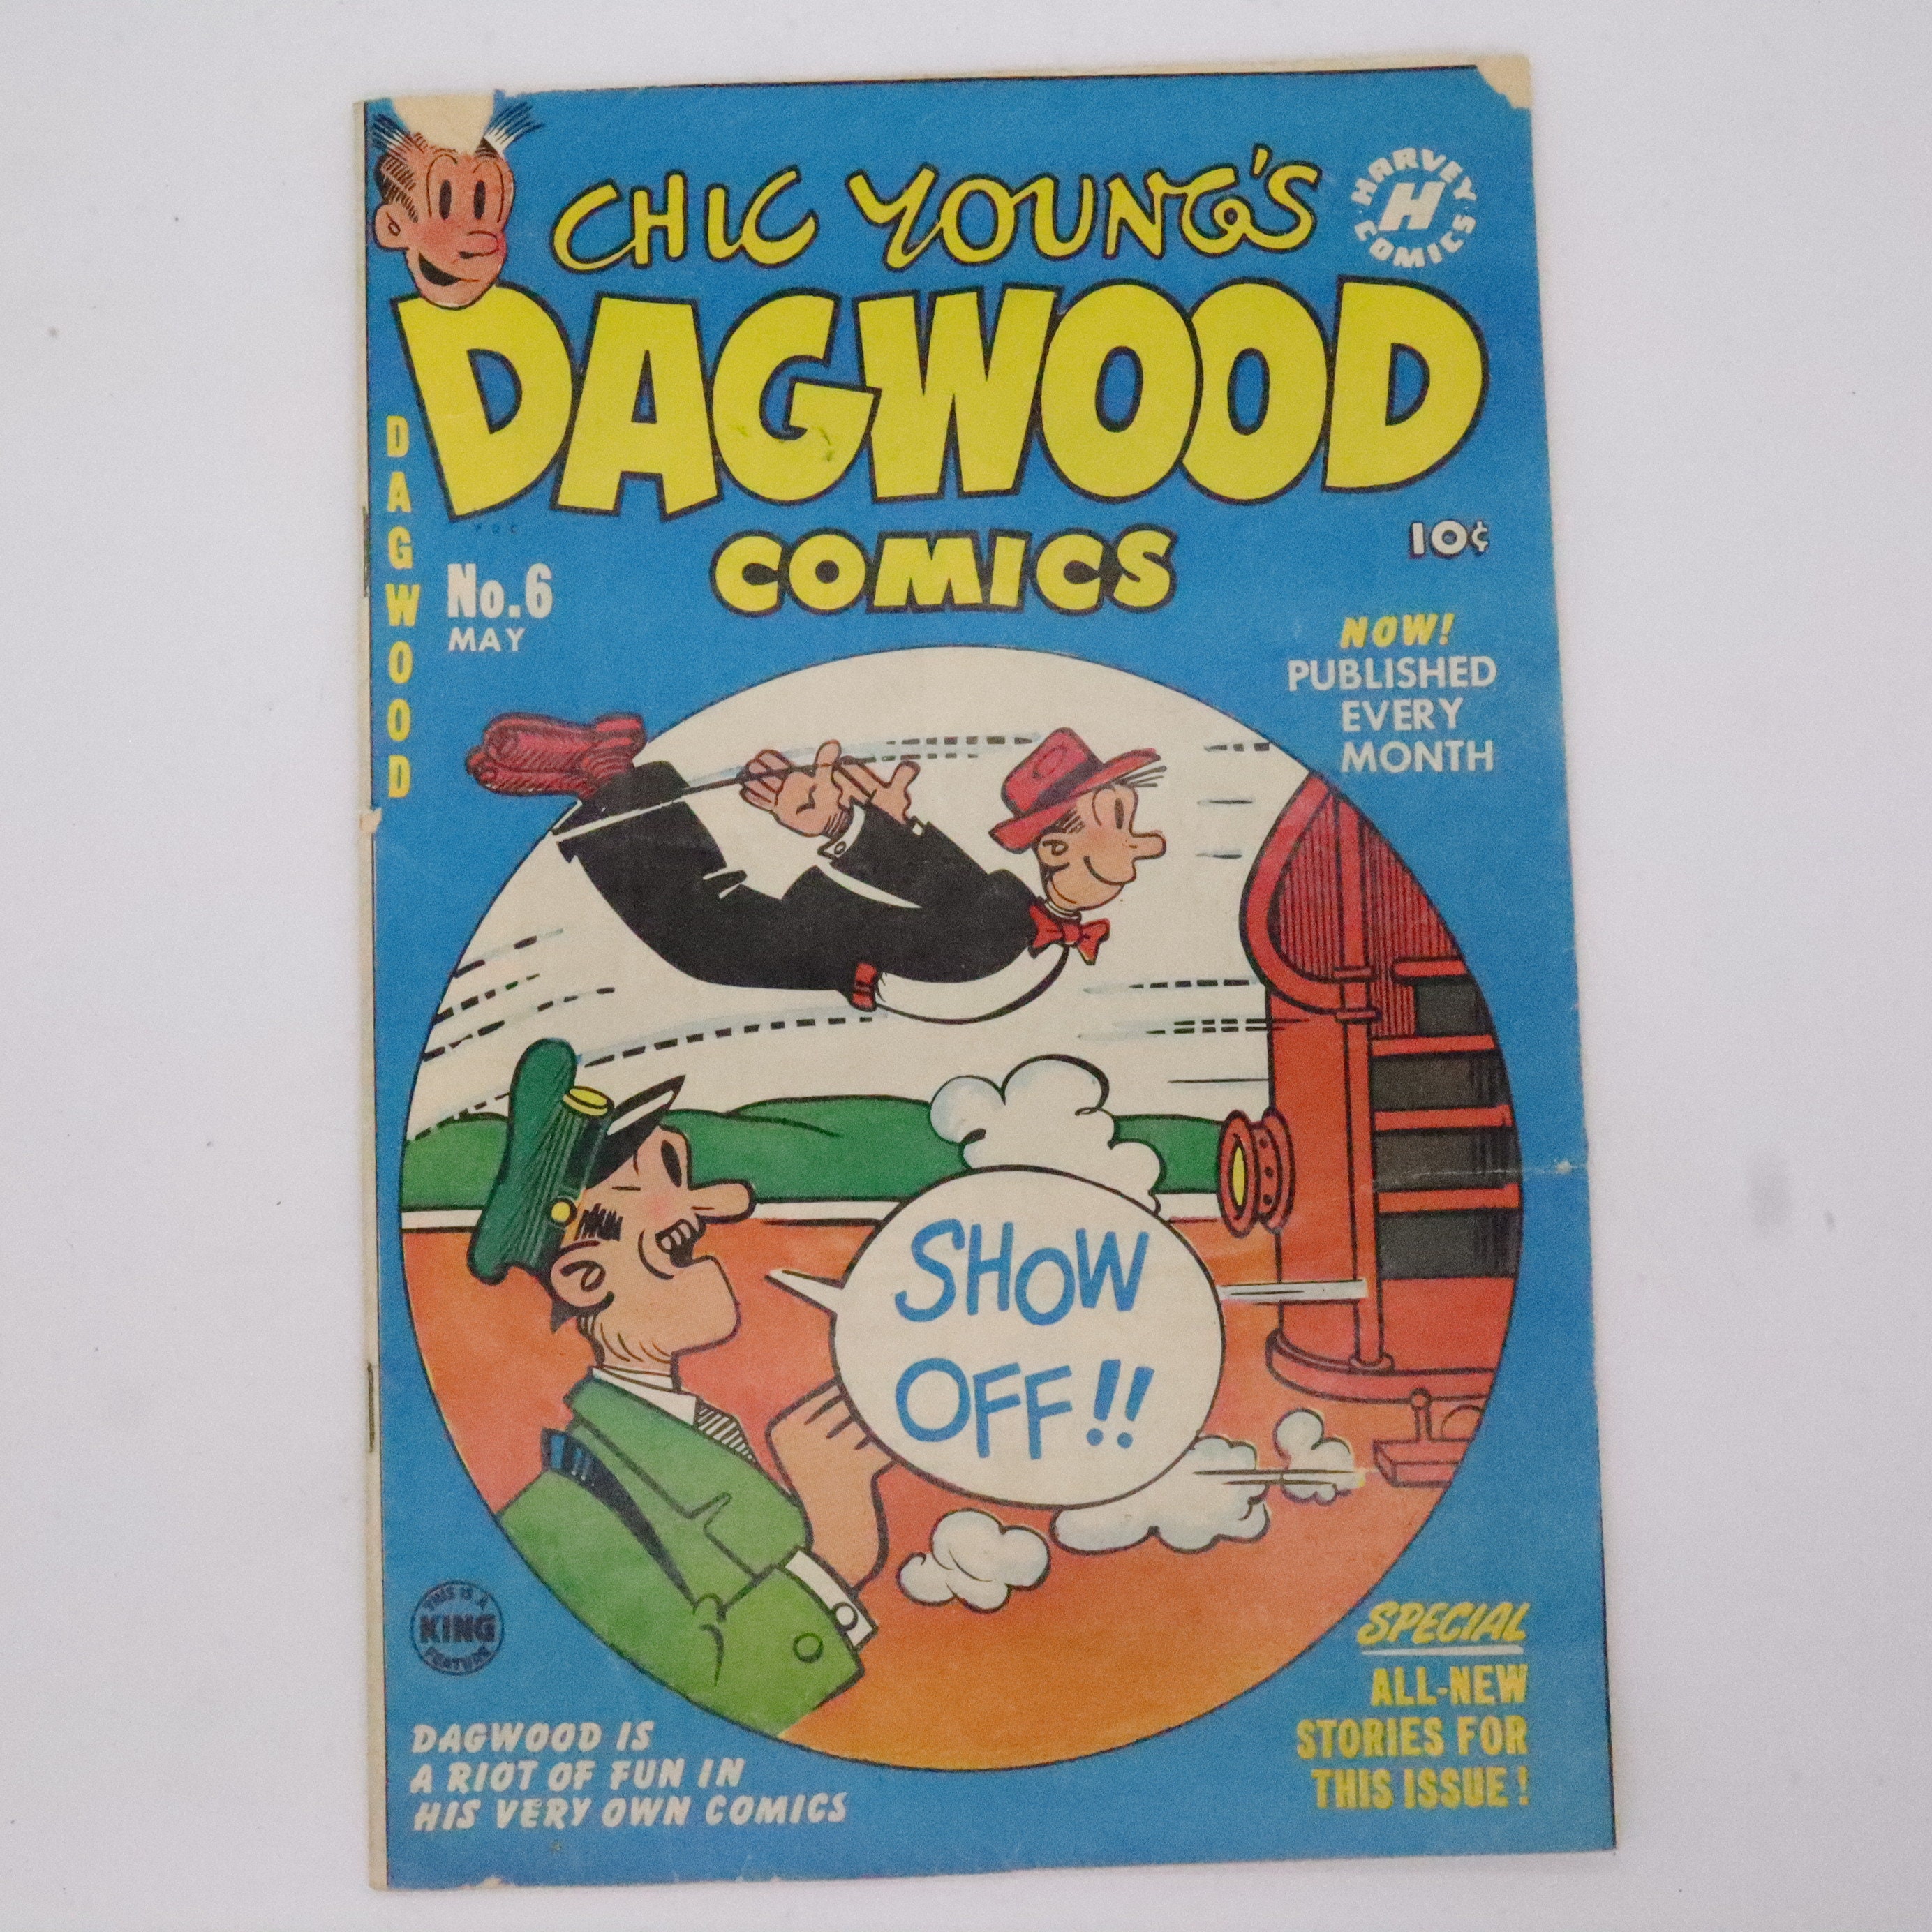 Dagwood Comics picture